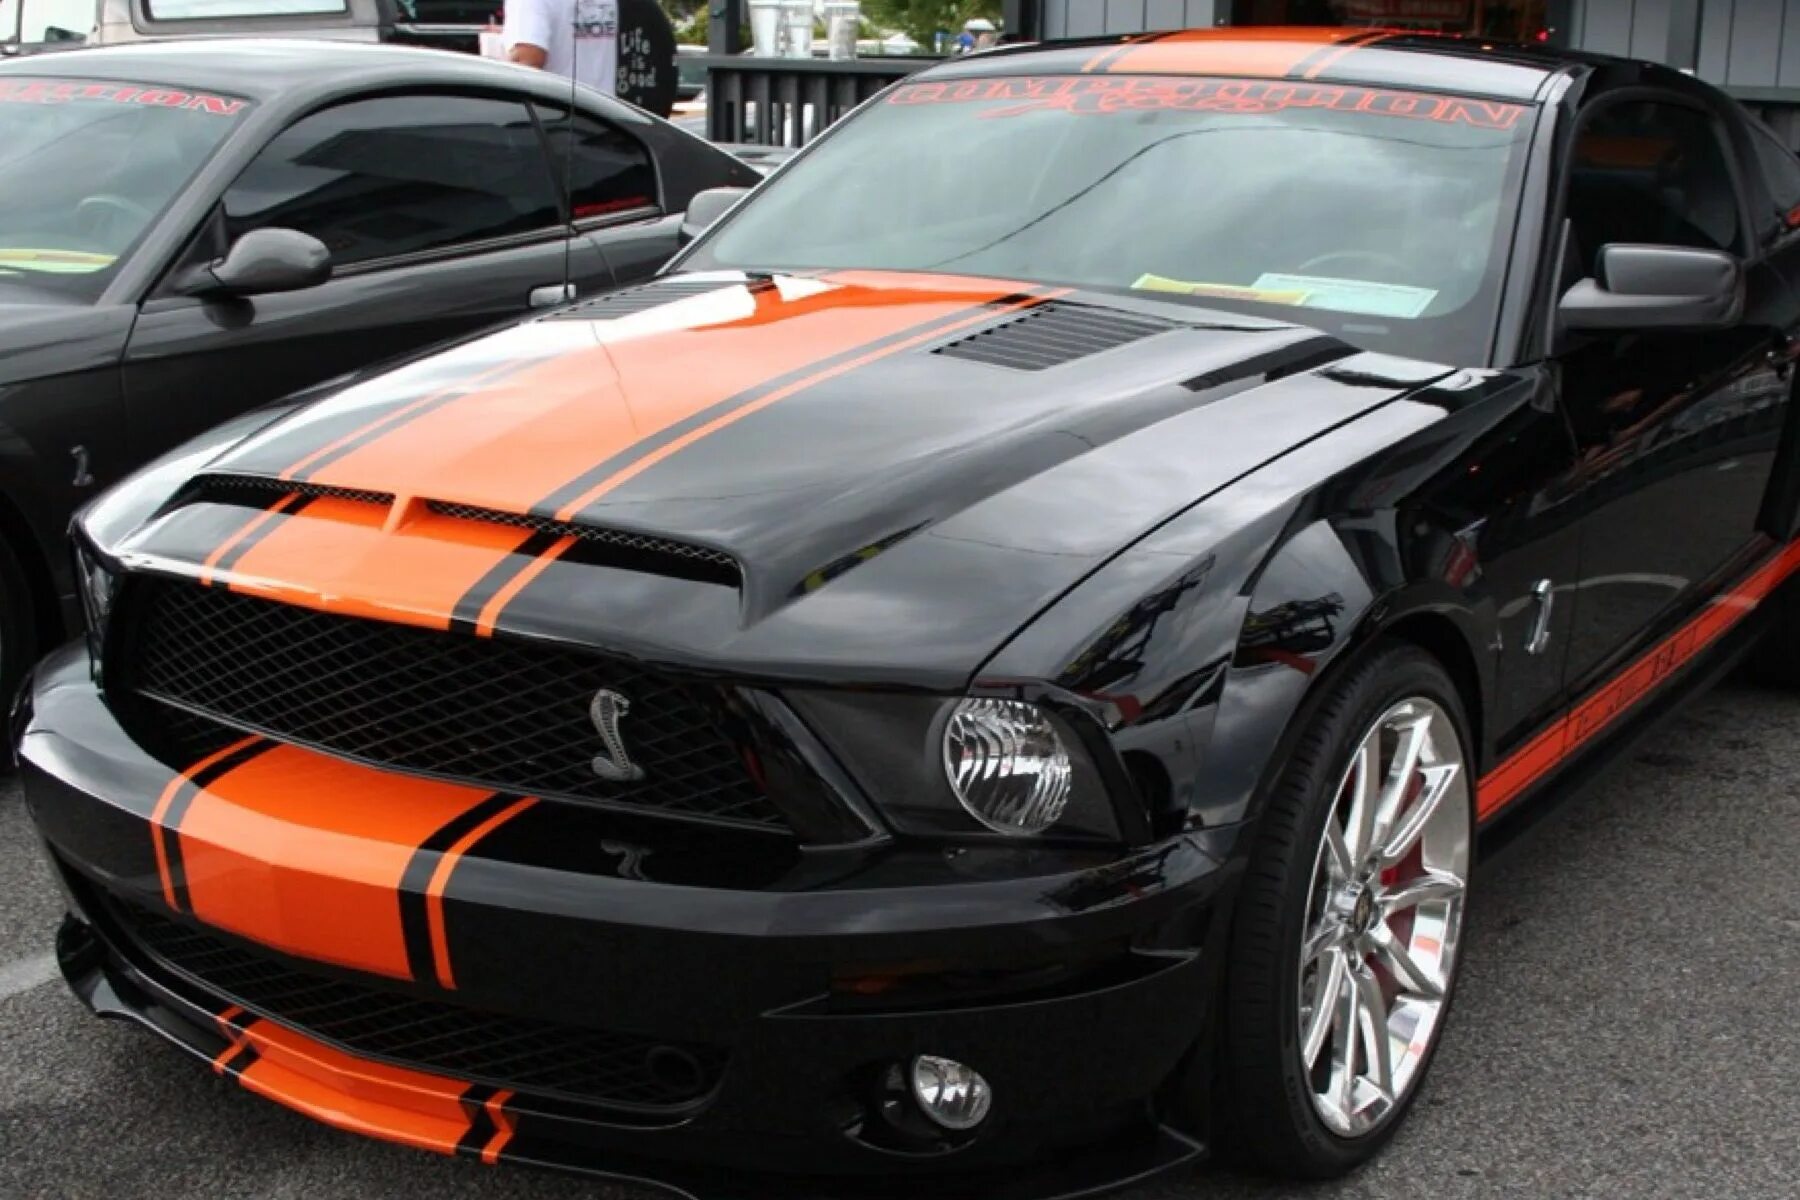 Ford Mustang Shelby gt500 оранжевый. Форд Мустанг черный. Форд Мустанг 2005 оранжевый. Мустанг gt500 Cobra. Машина с черными полосками